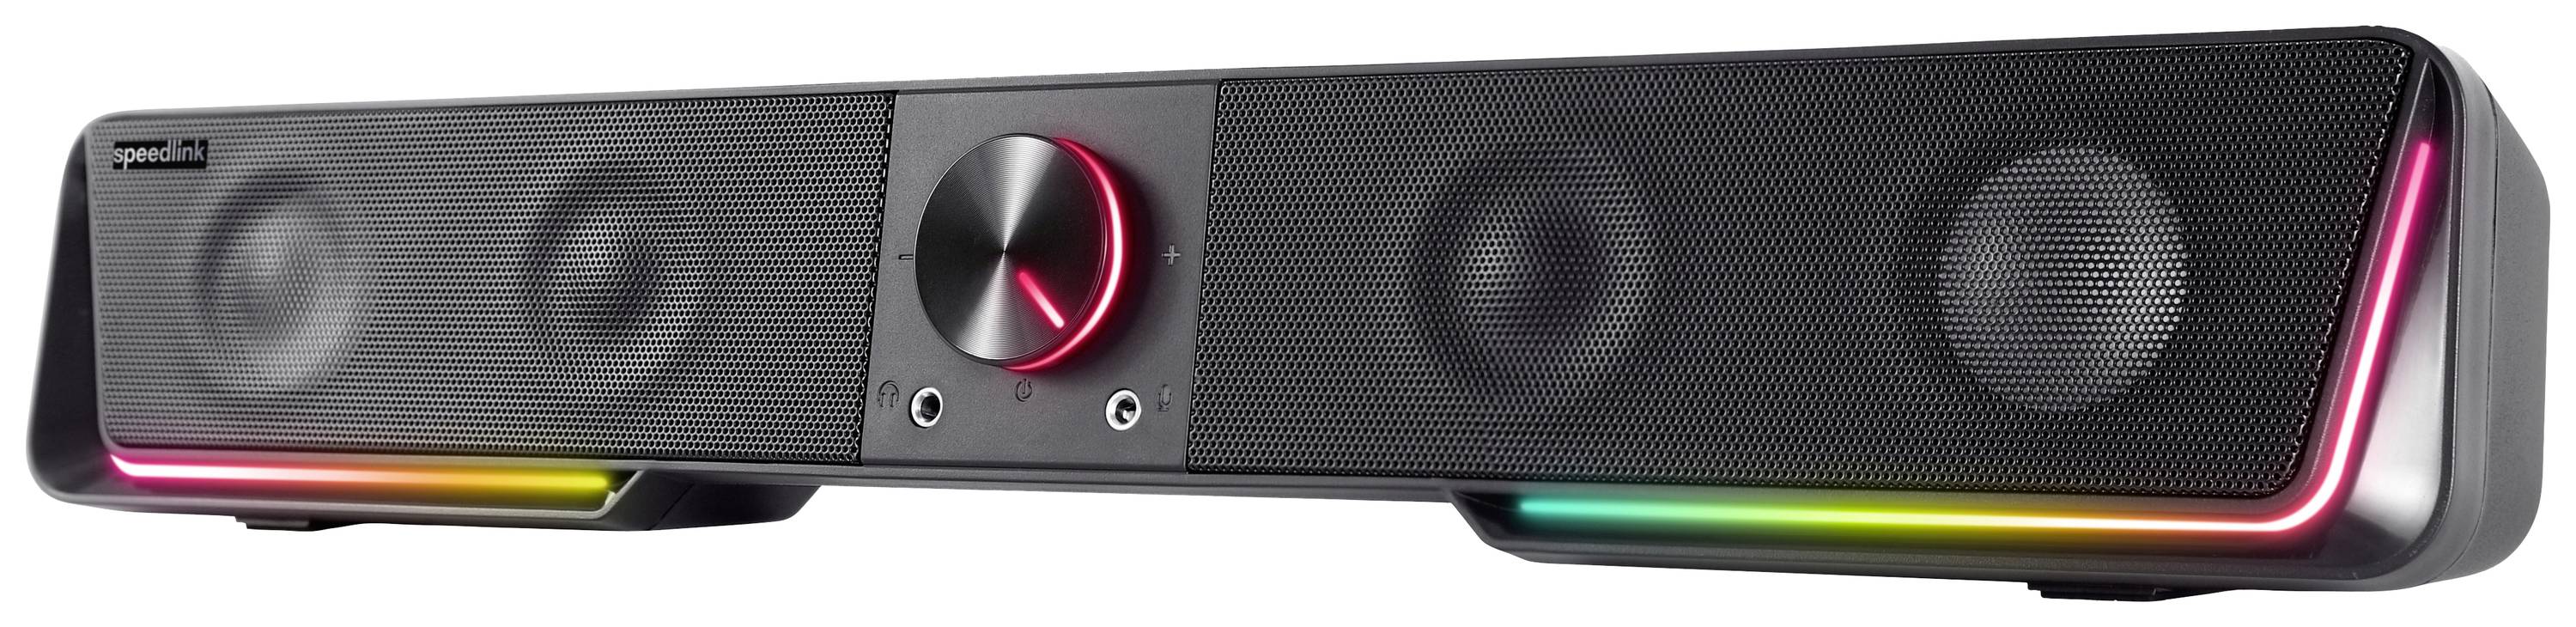 SPEED-LINK Lautsprecher GRAVITY RGB, Soundbar, schwarz retail